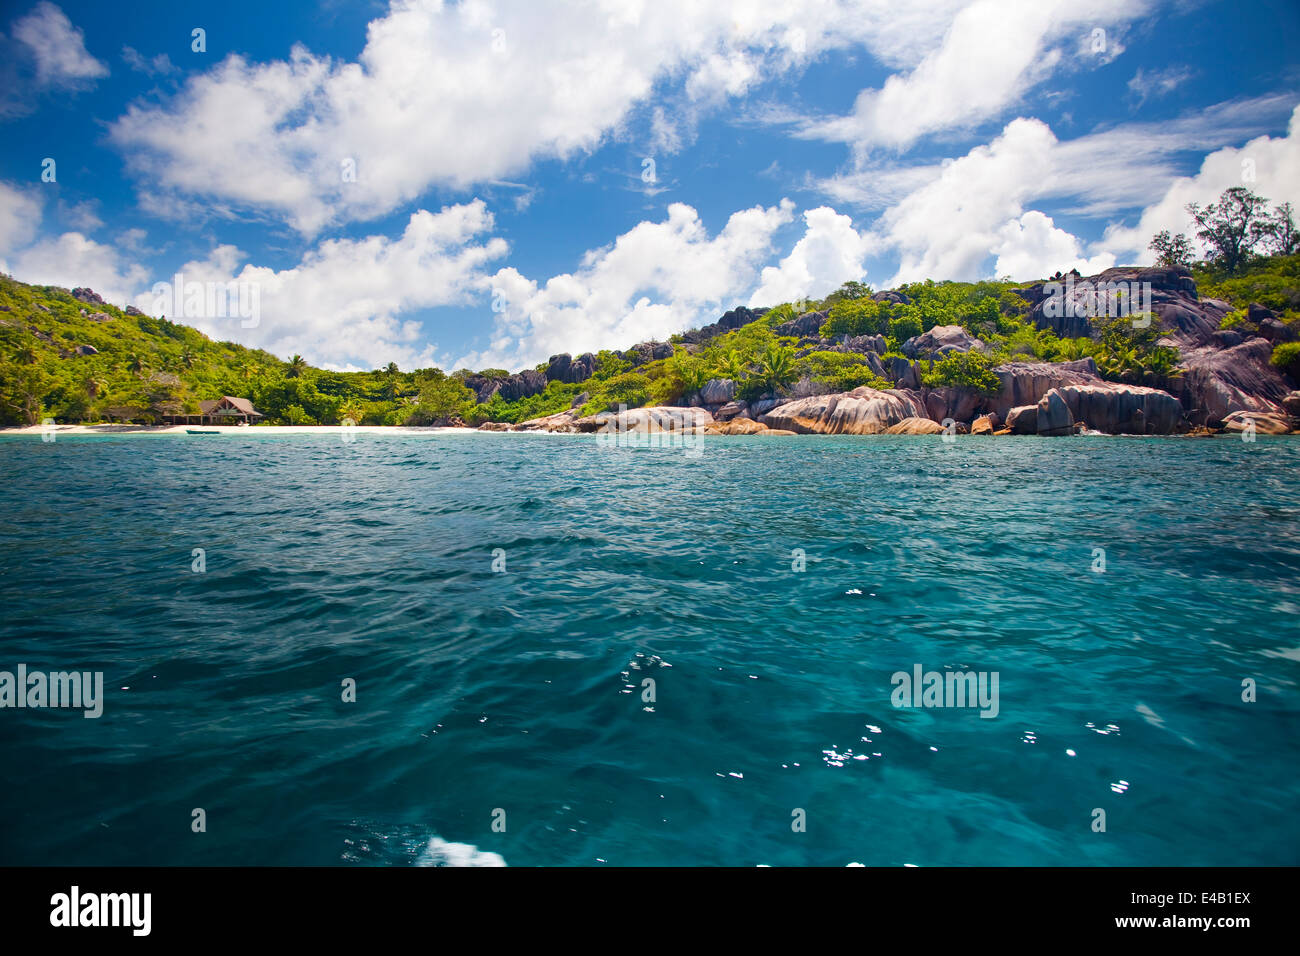 Plage de rêve - l'île de félicité les Seychelles Banque D'Images